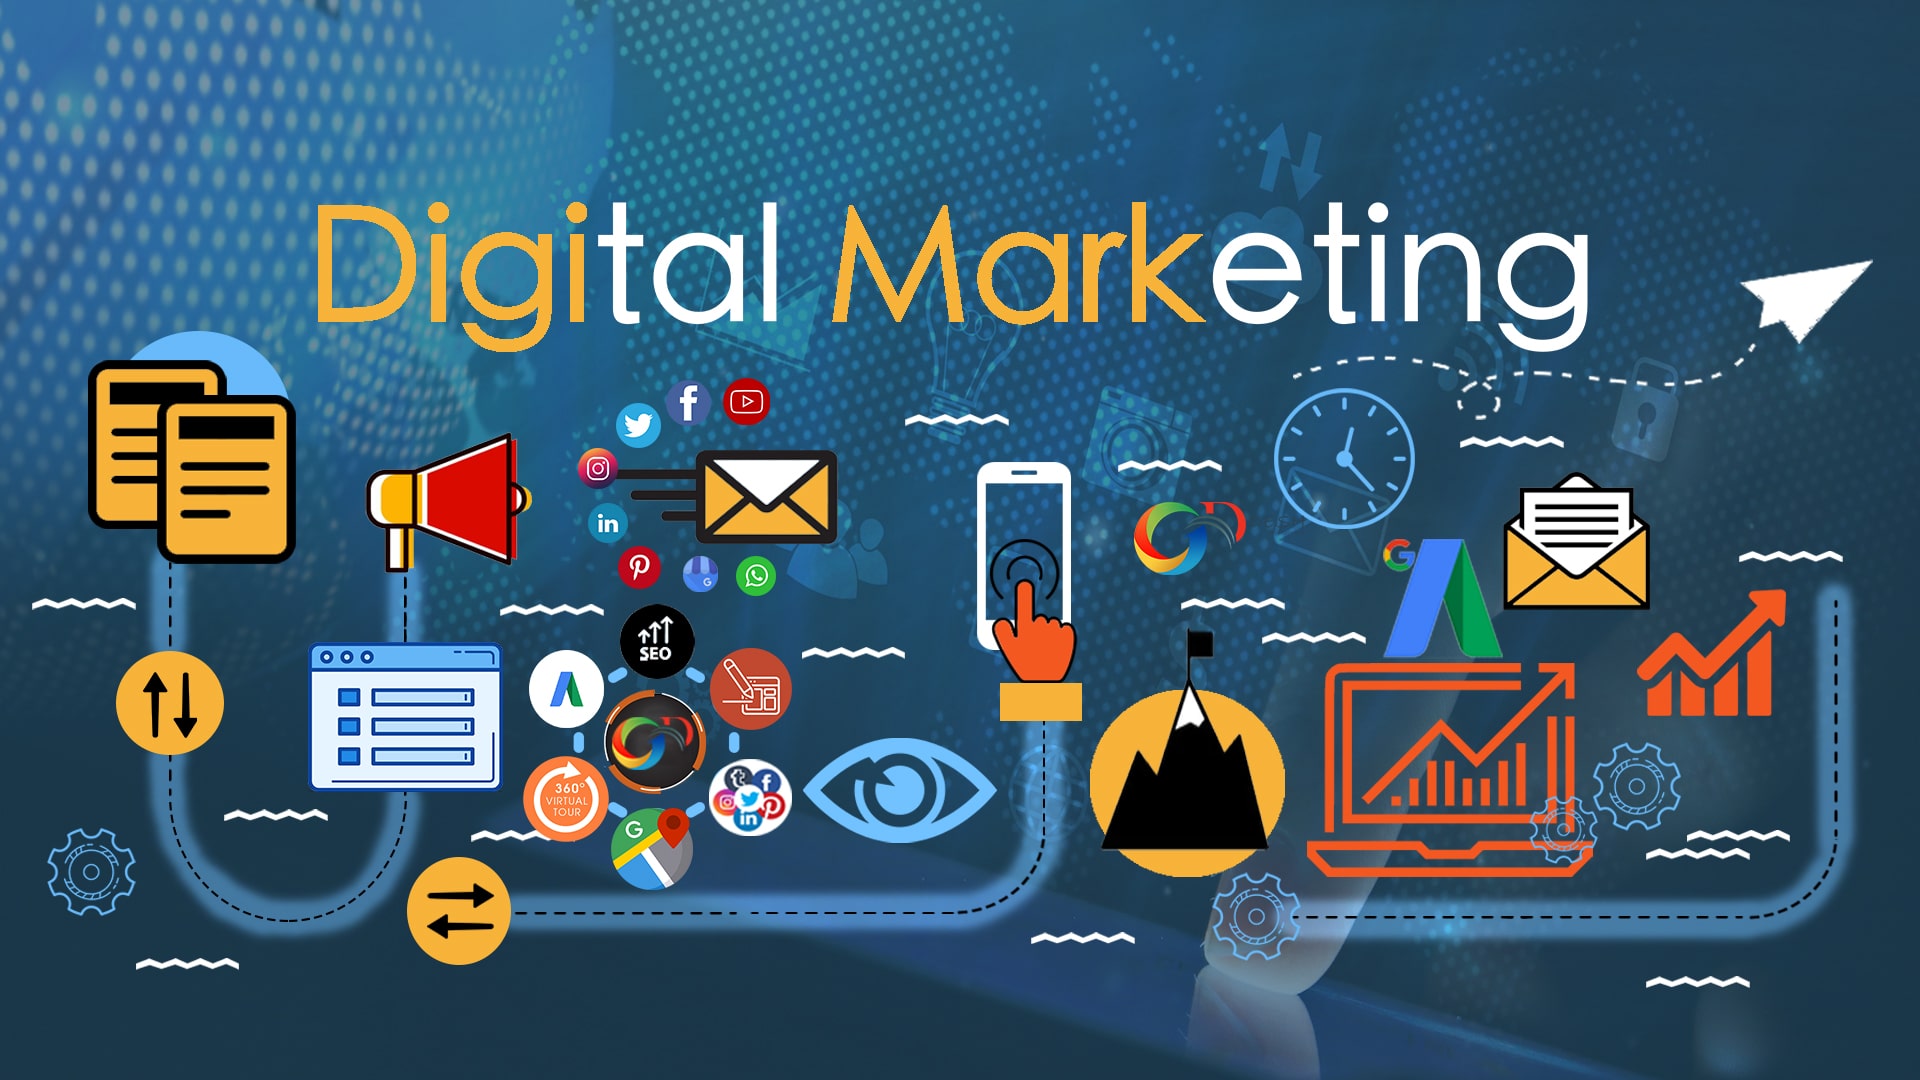 Vai trò của Digital Marketing trong thời đại công nghệ 4.0